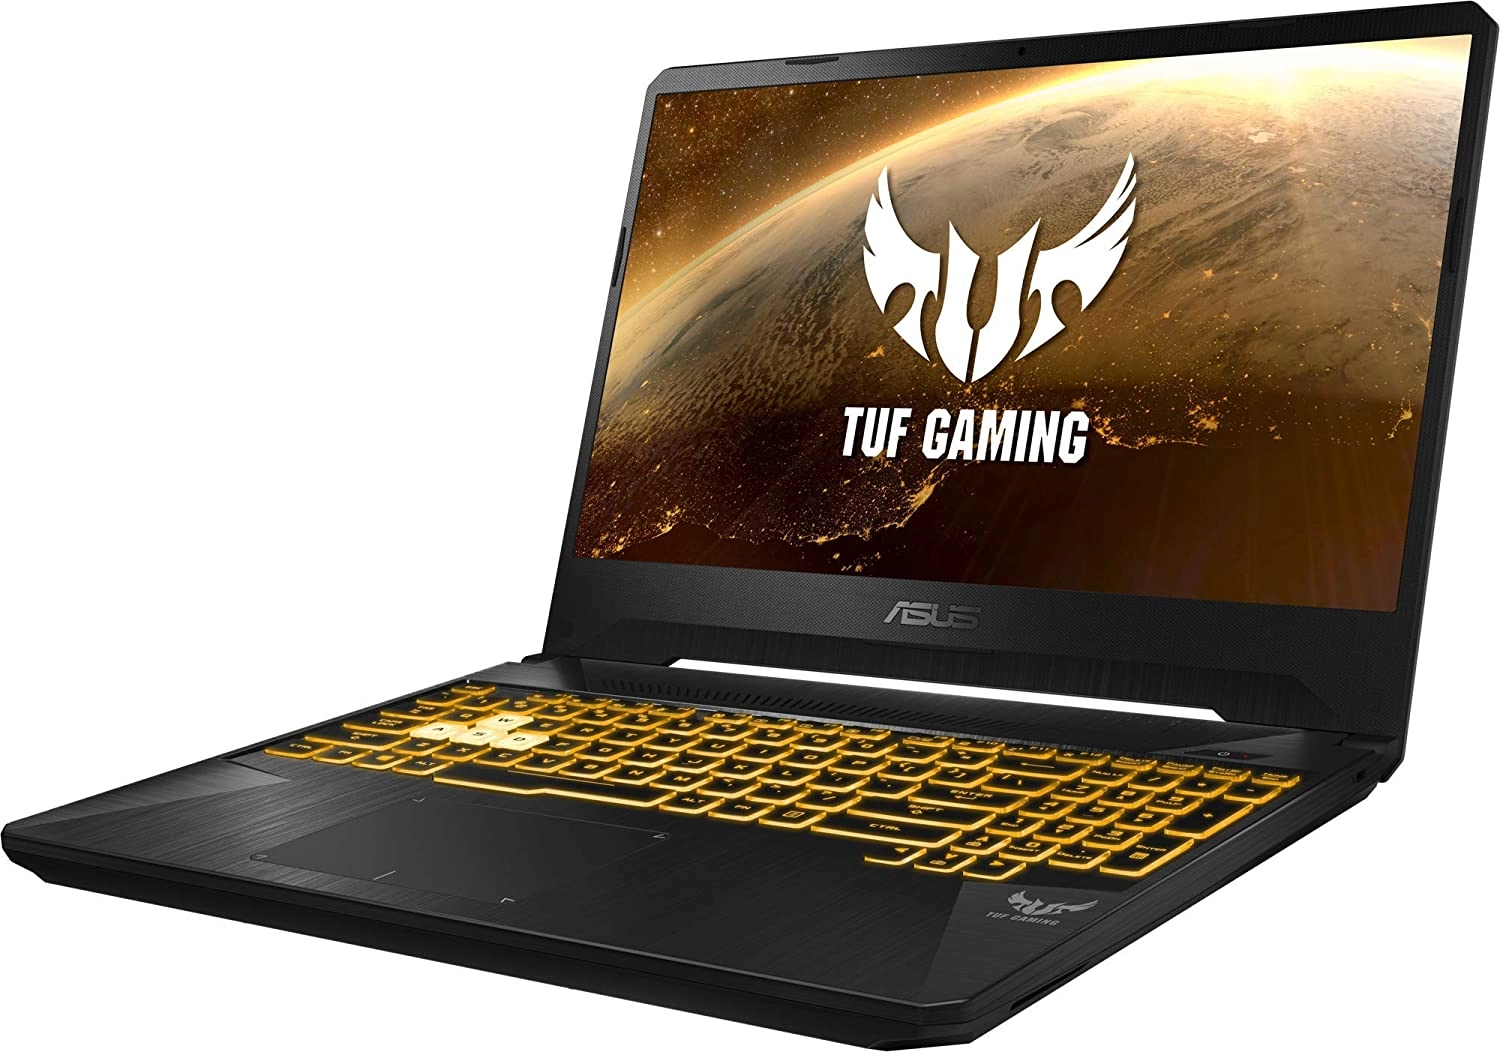 Asus TUF Gaming FX505DT-BQ180 laptop image